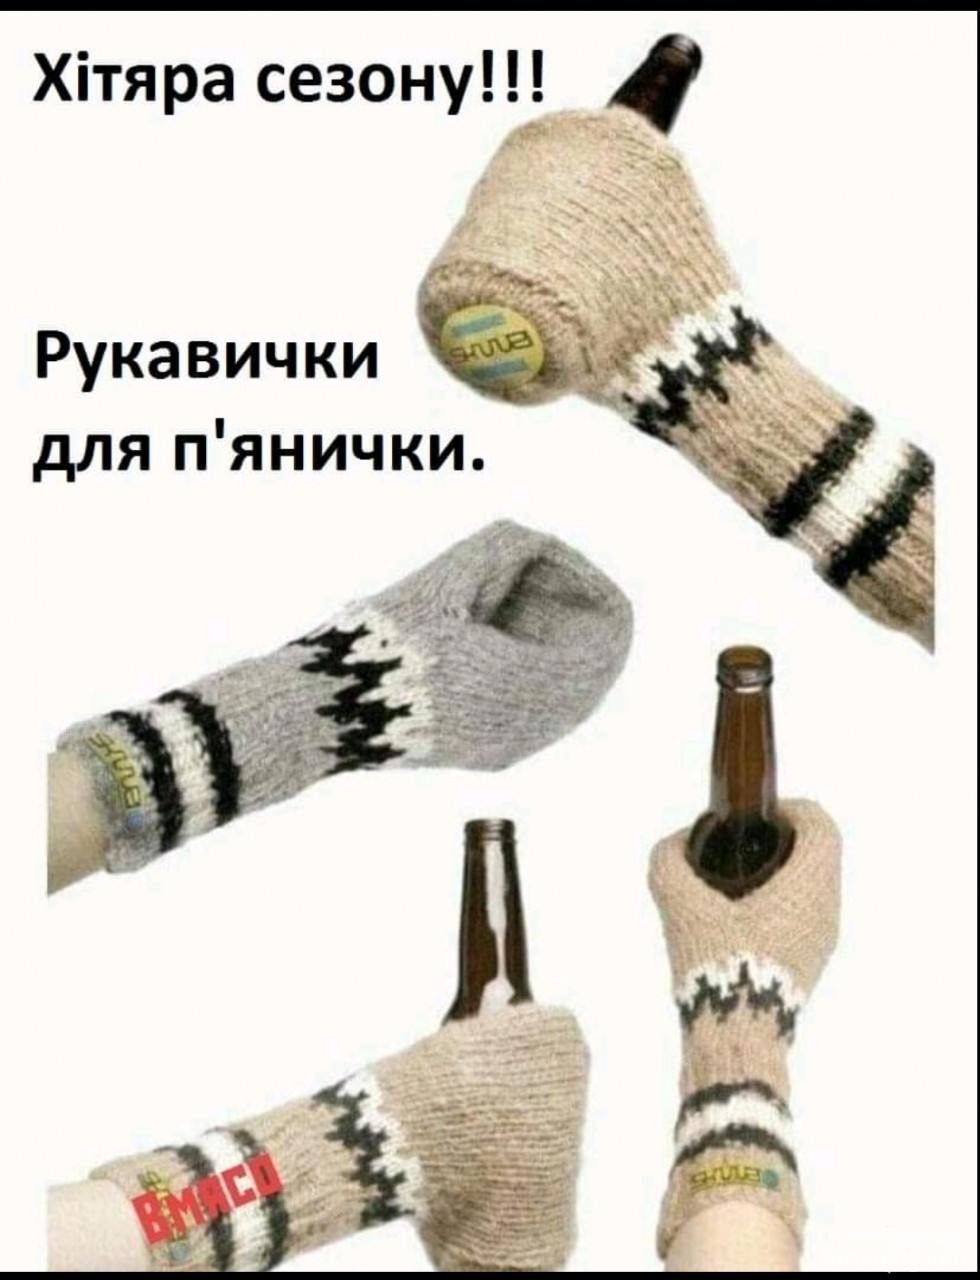 142288 - Пить или не пить? - пятничная алкогольная тема )))